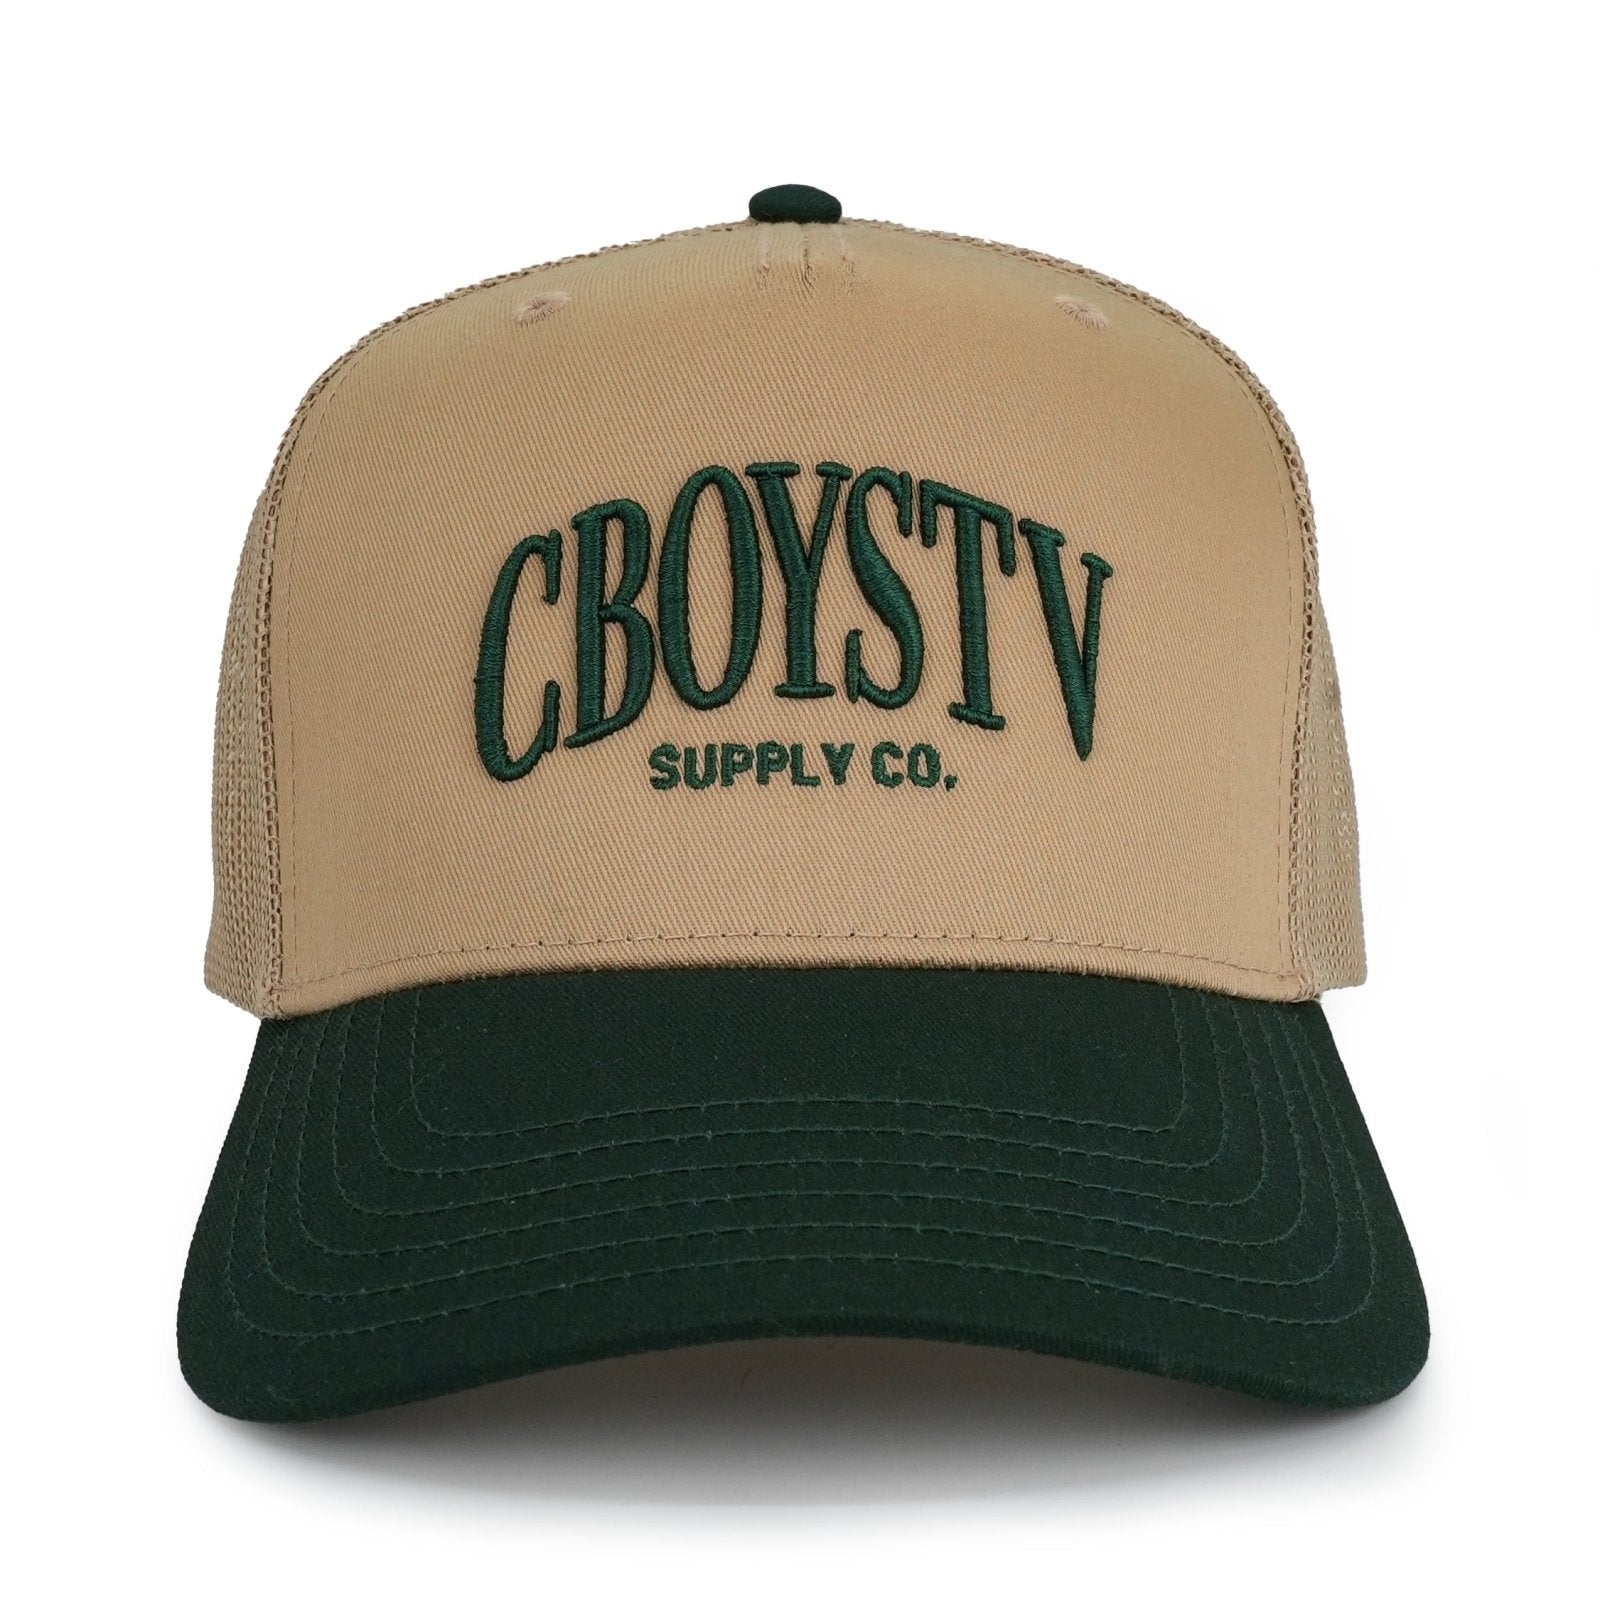 CboysTV Supply Co. Hat